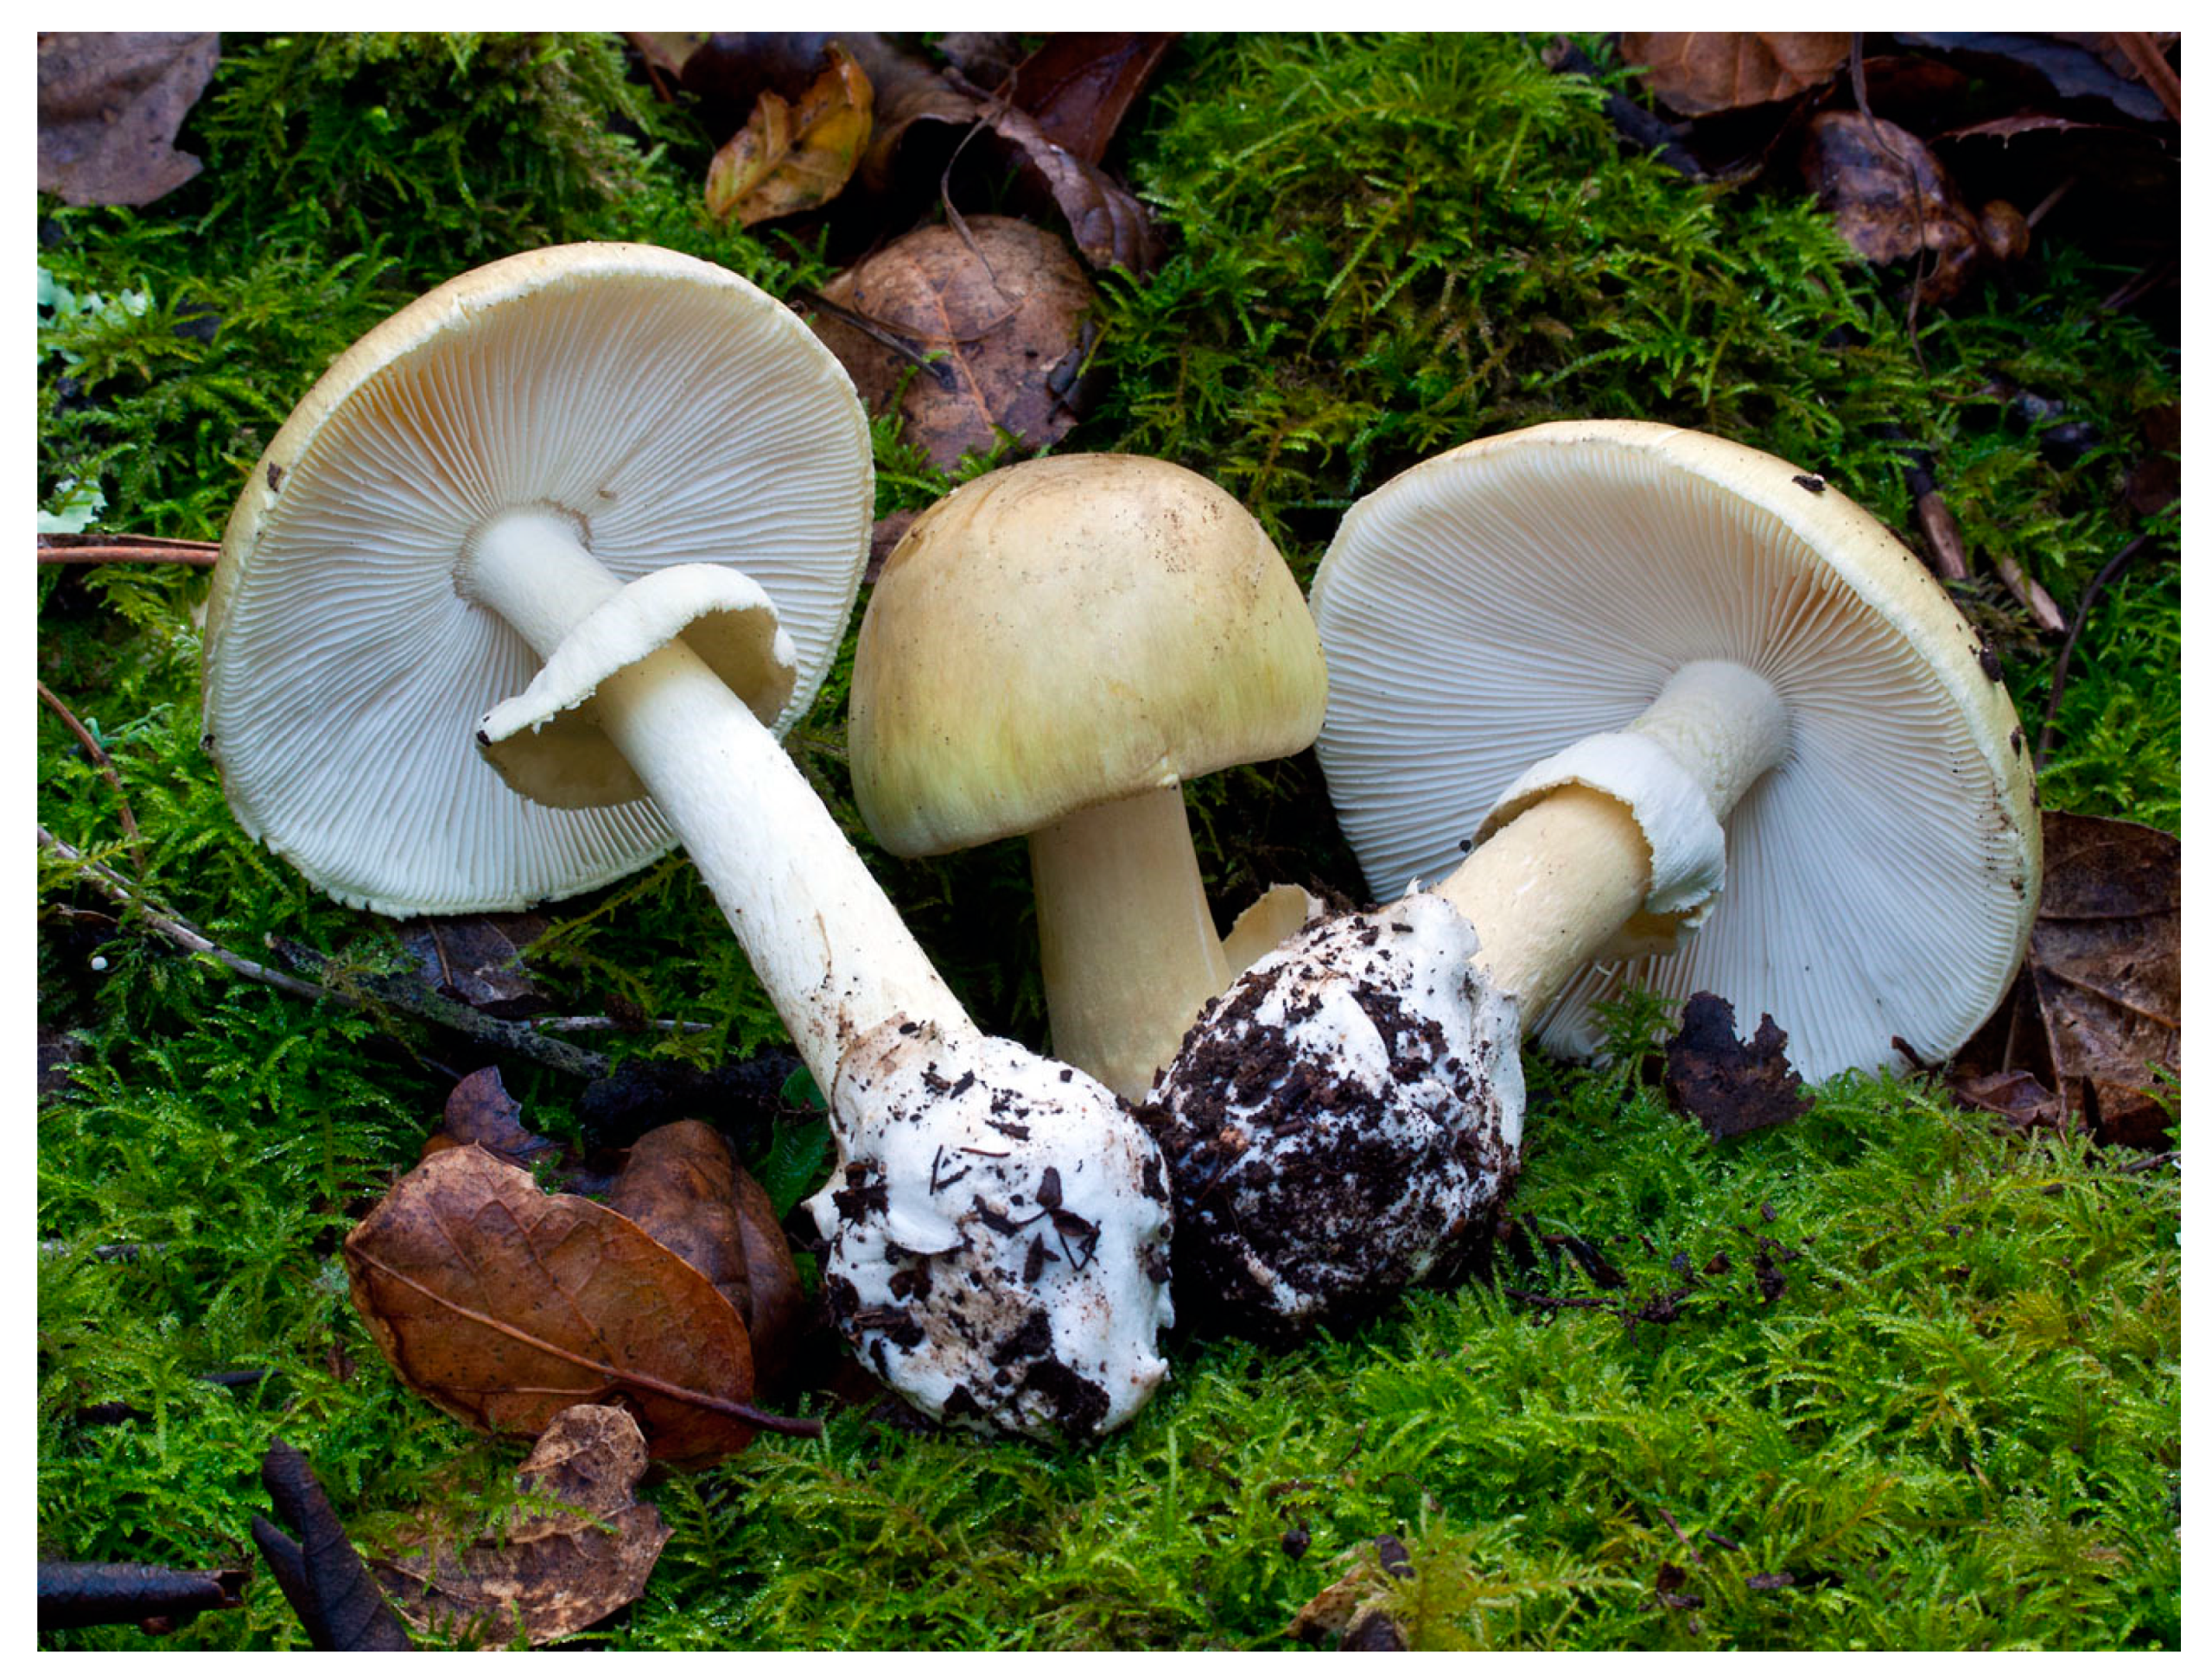 Поганка пластинчатая. Бледная поганка гриб. Аmanita phalloides – бледная поганка. Ядовитые грибы белая боганка. Бледная погоганка гриб.